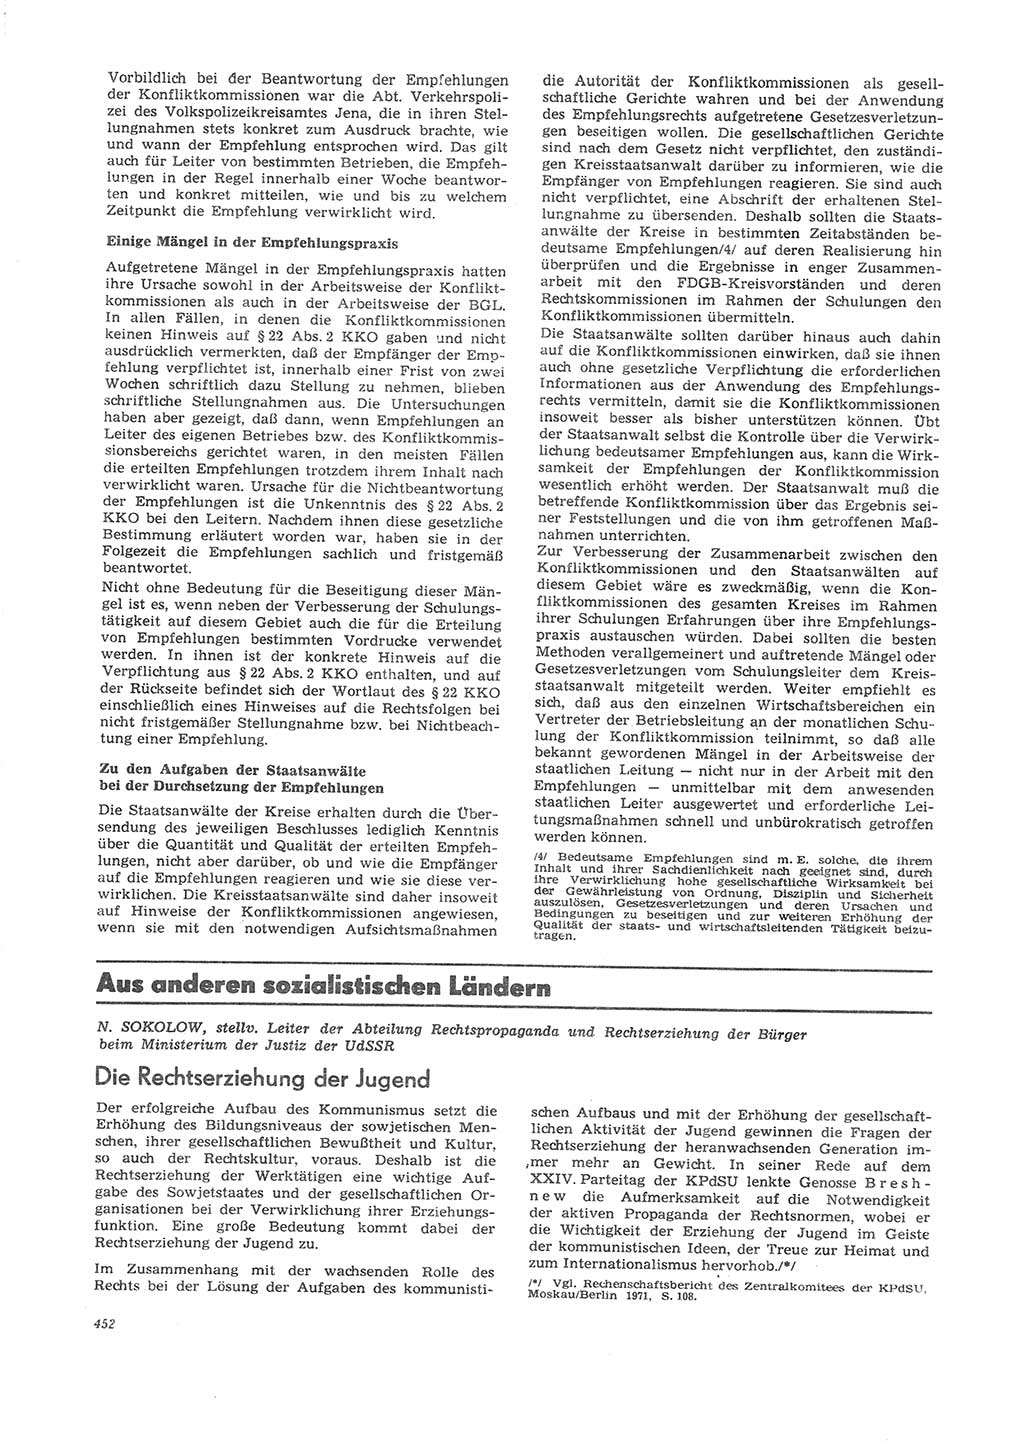 Neue Justiz (NJ), Zeitschrift für Recht und Rechtswissenschaft [Deutsche Demokratische Republik (DDR)], 26. Jahrgang 1972, Seite 452 (NJ DDR 1972, S. 452)